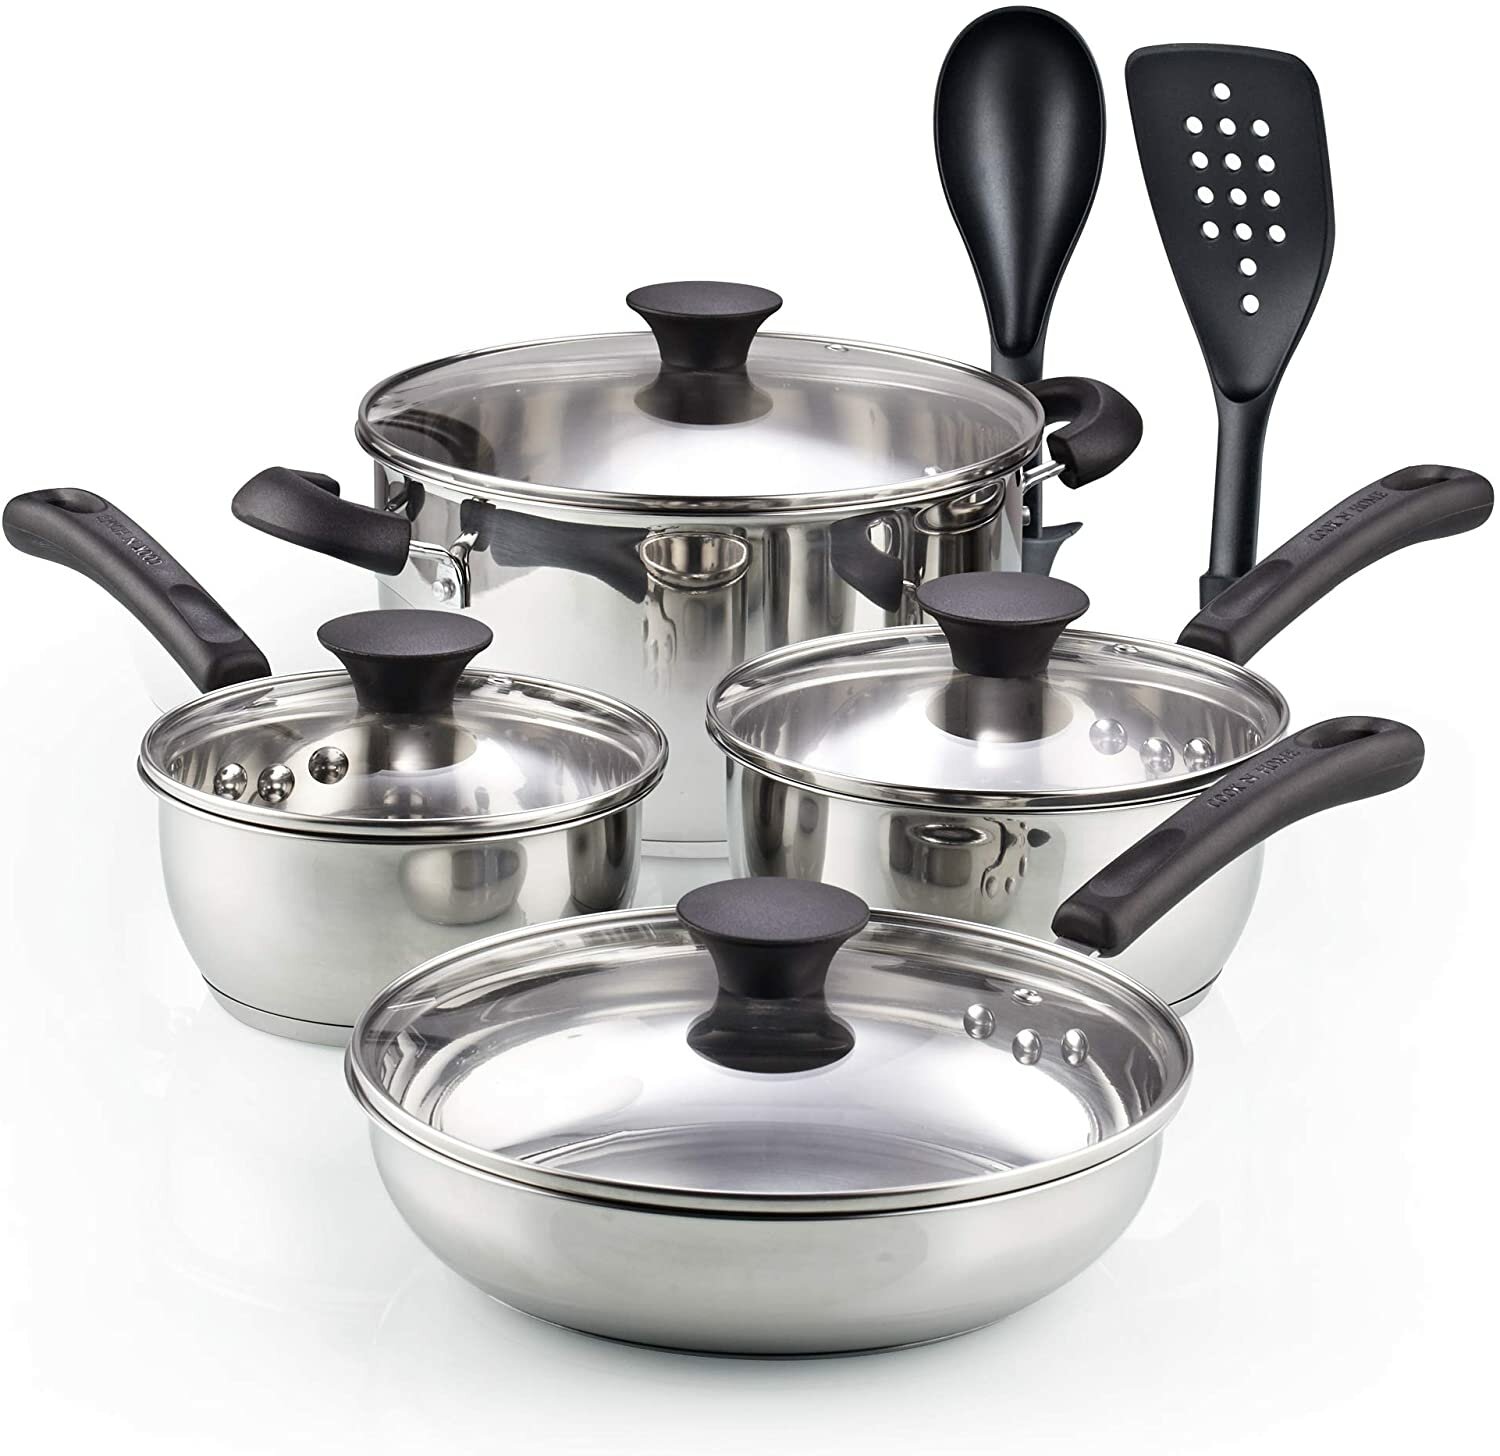 https://assets.wfcdn.com/im/84071683/compr-r85/1152/115222329/cook-n-home-10-piece-stainless-steel-cookware-set.jpg